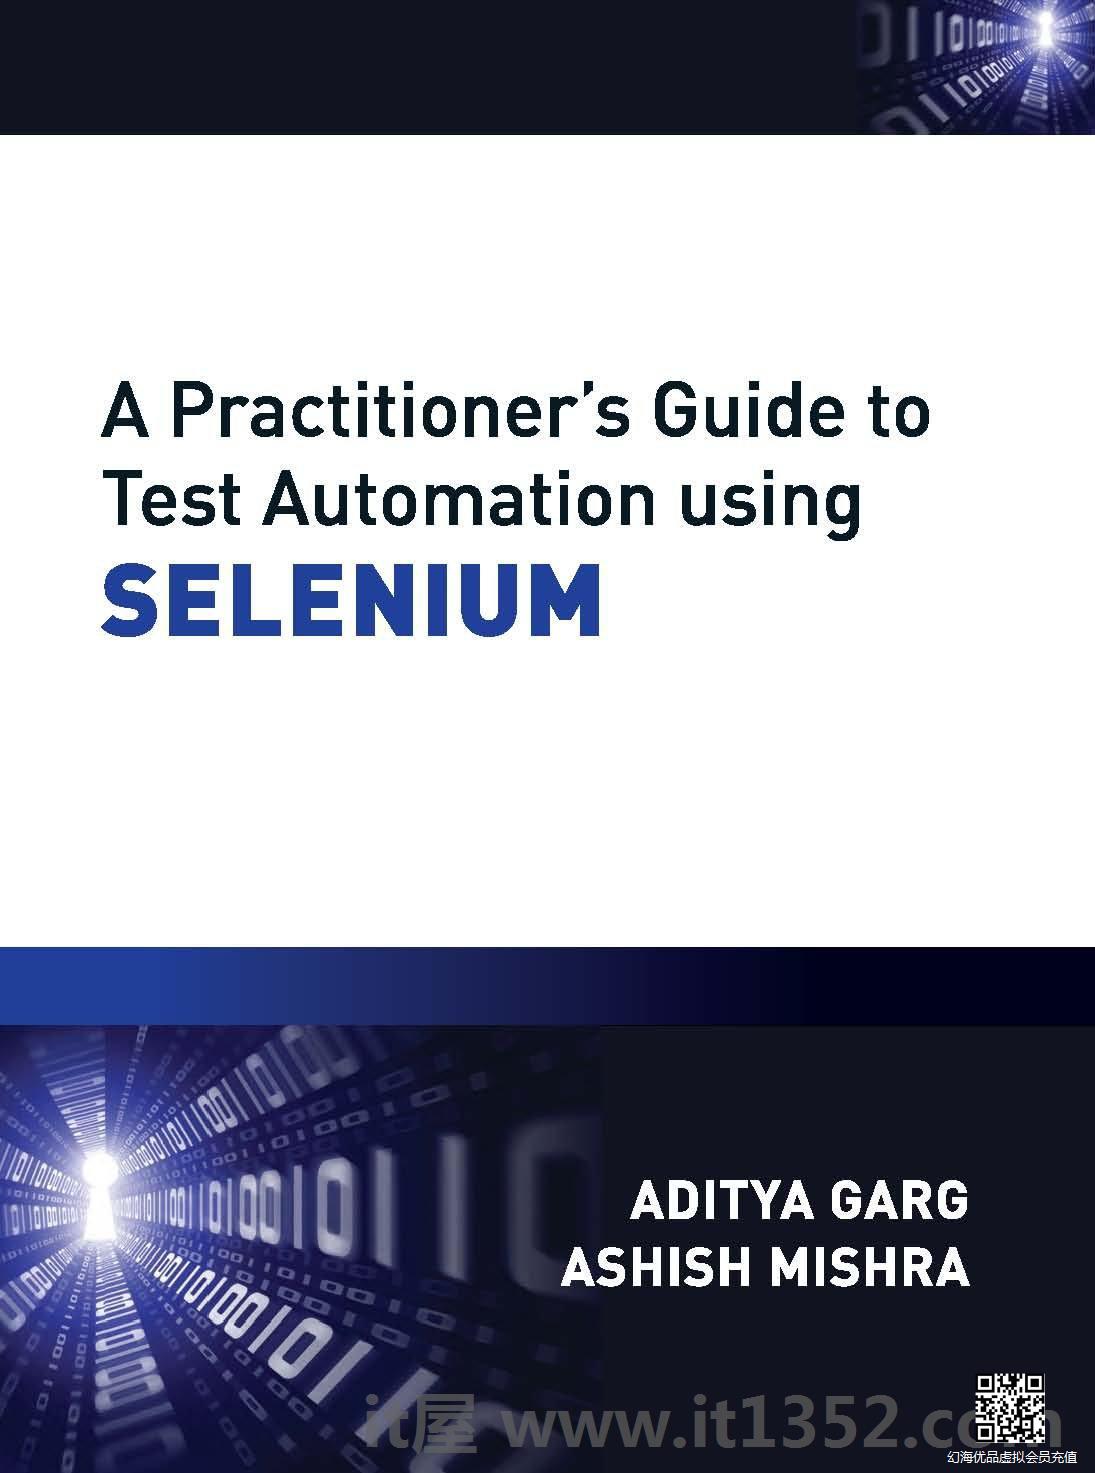 使用SELENIUM测试自动化的从业者指南